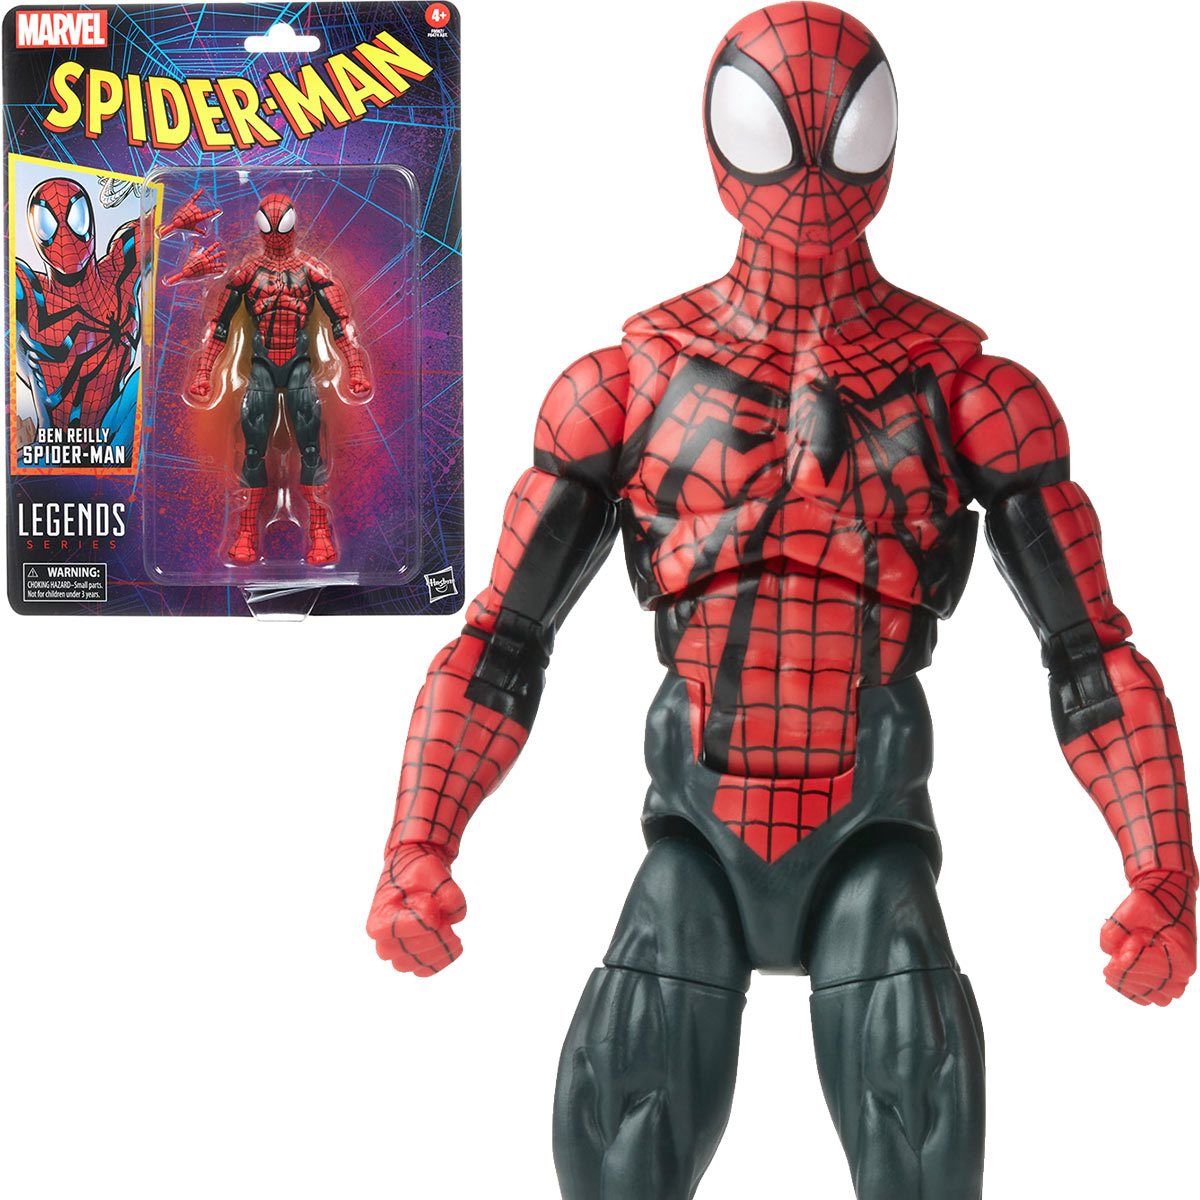 Spider-Man Retro Marvel Legends Ben Reilly Spider-Man 6-Inch Action Fi –  The Three Boomsticks